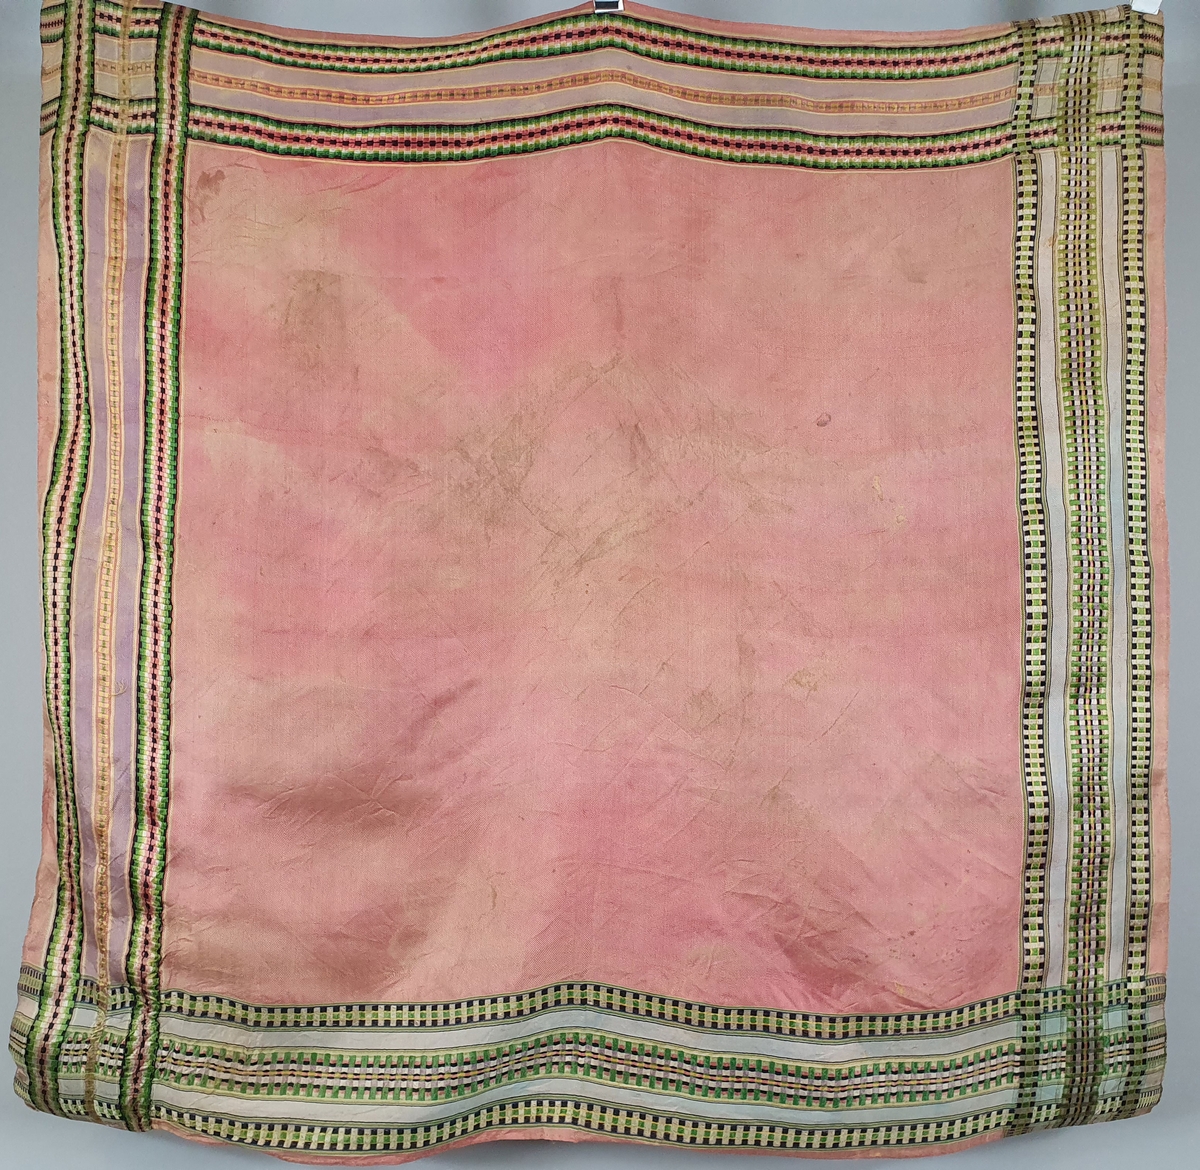 Mørk rosa sjal av silke med striper i grønt, svart og gult langs kantene.